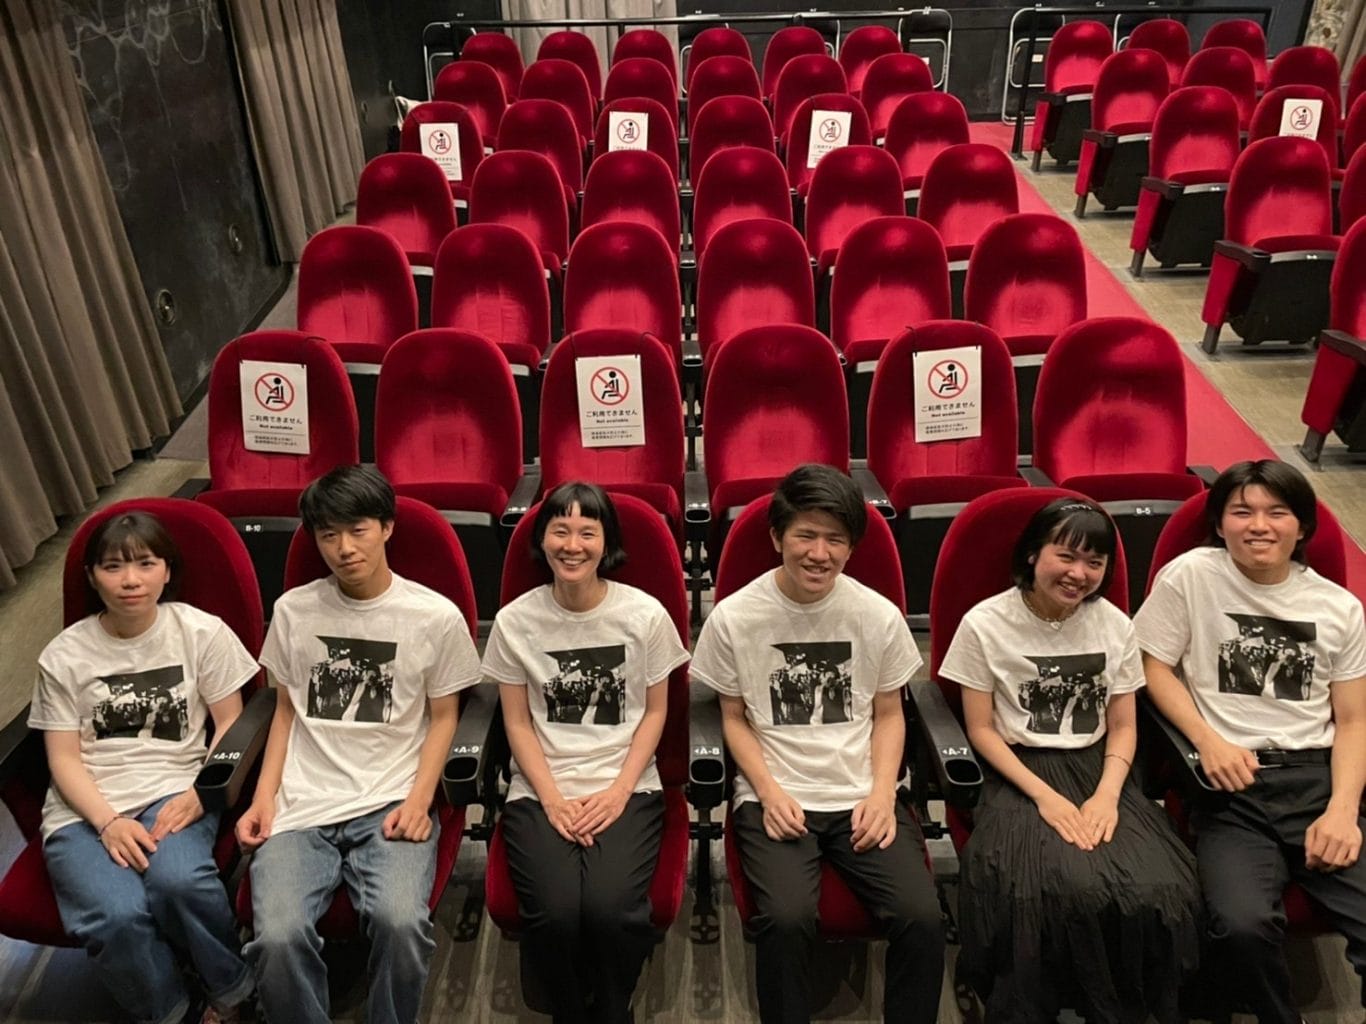 関西のミニシアターの魅力を発信する学生団体「映画チア部」が、シネ・ヌーヴォ支援Tシャツの販売を開始。